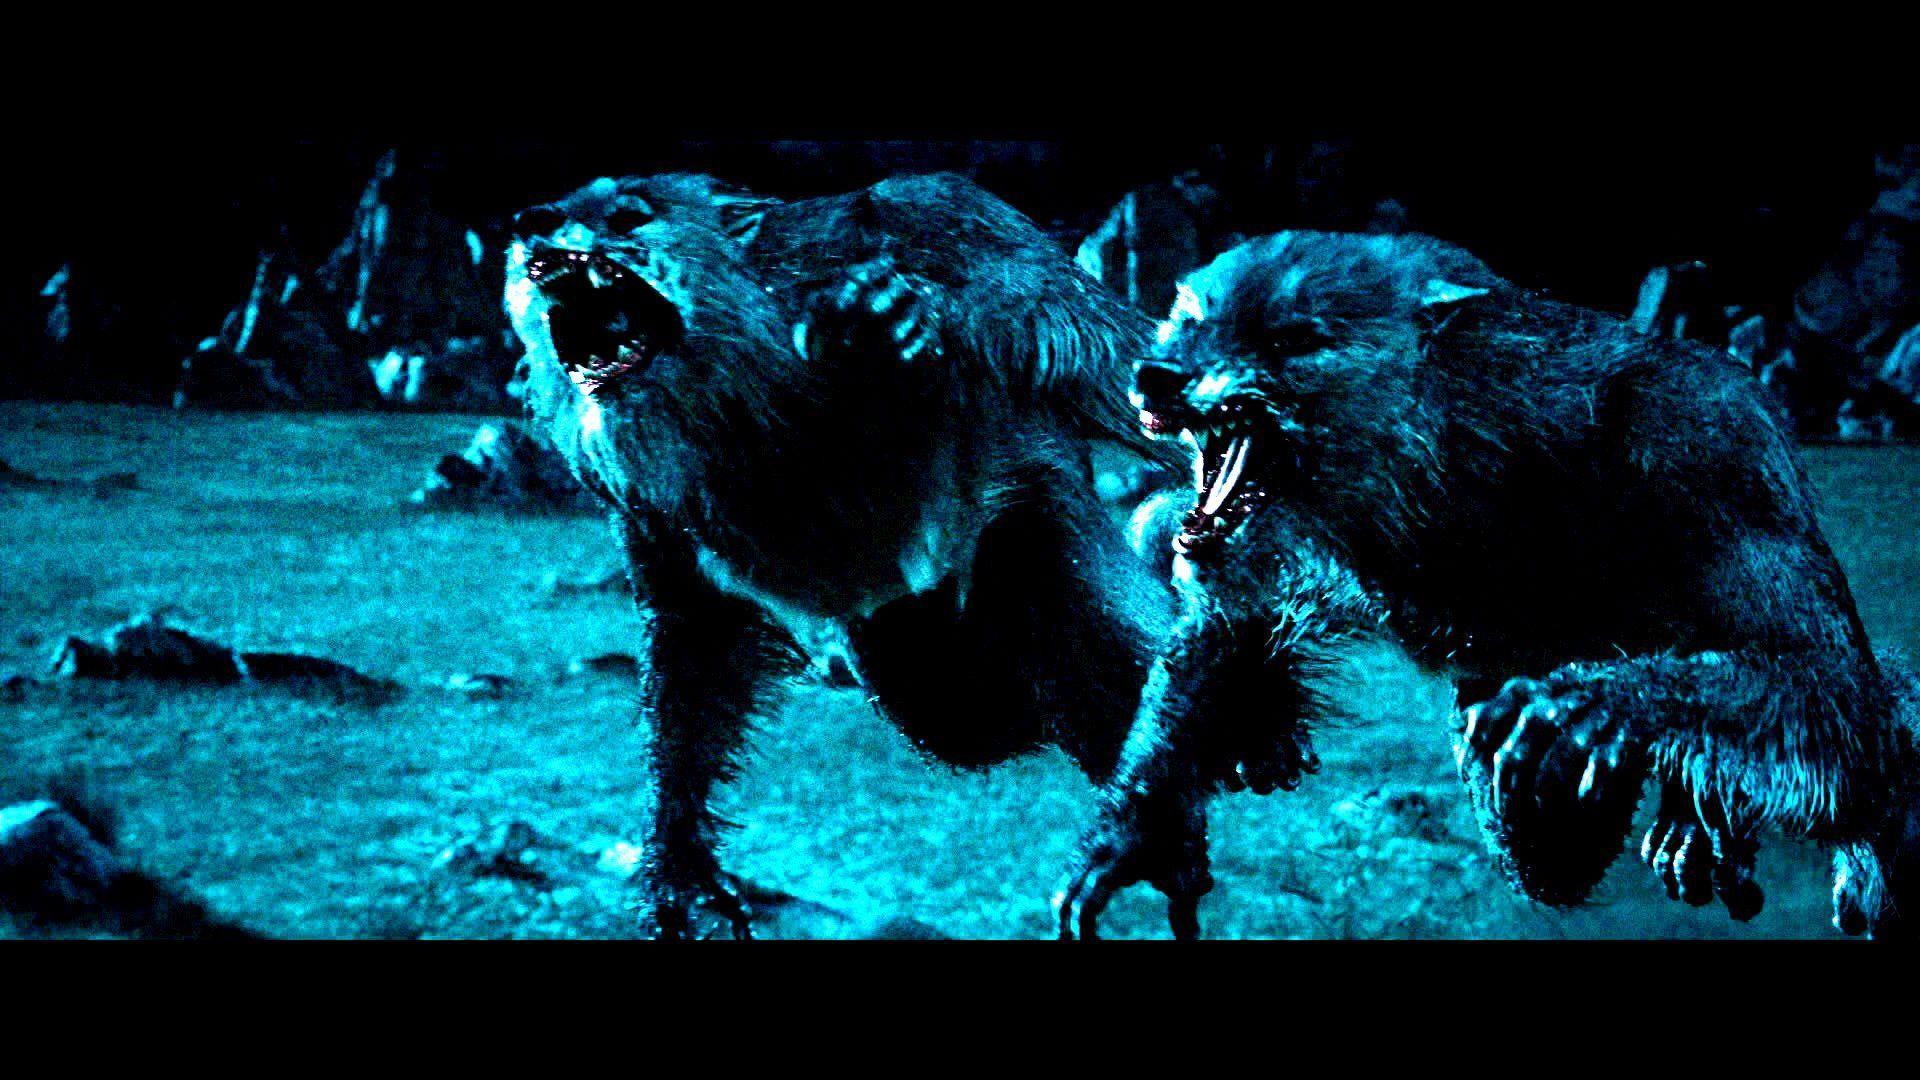 Underworld Werewolf. UNDERWORLD action fantasy thriller dark lycan